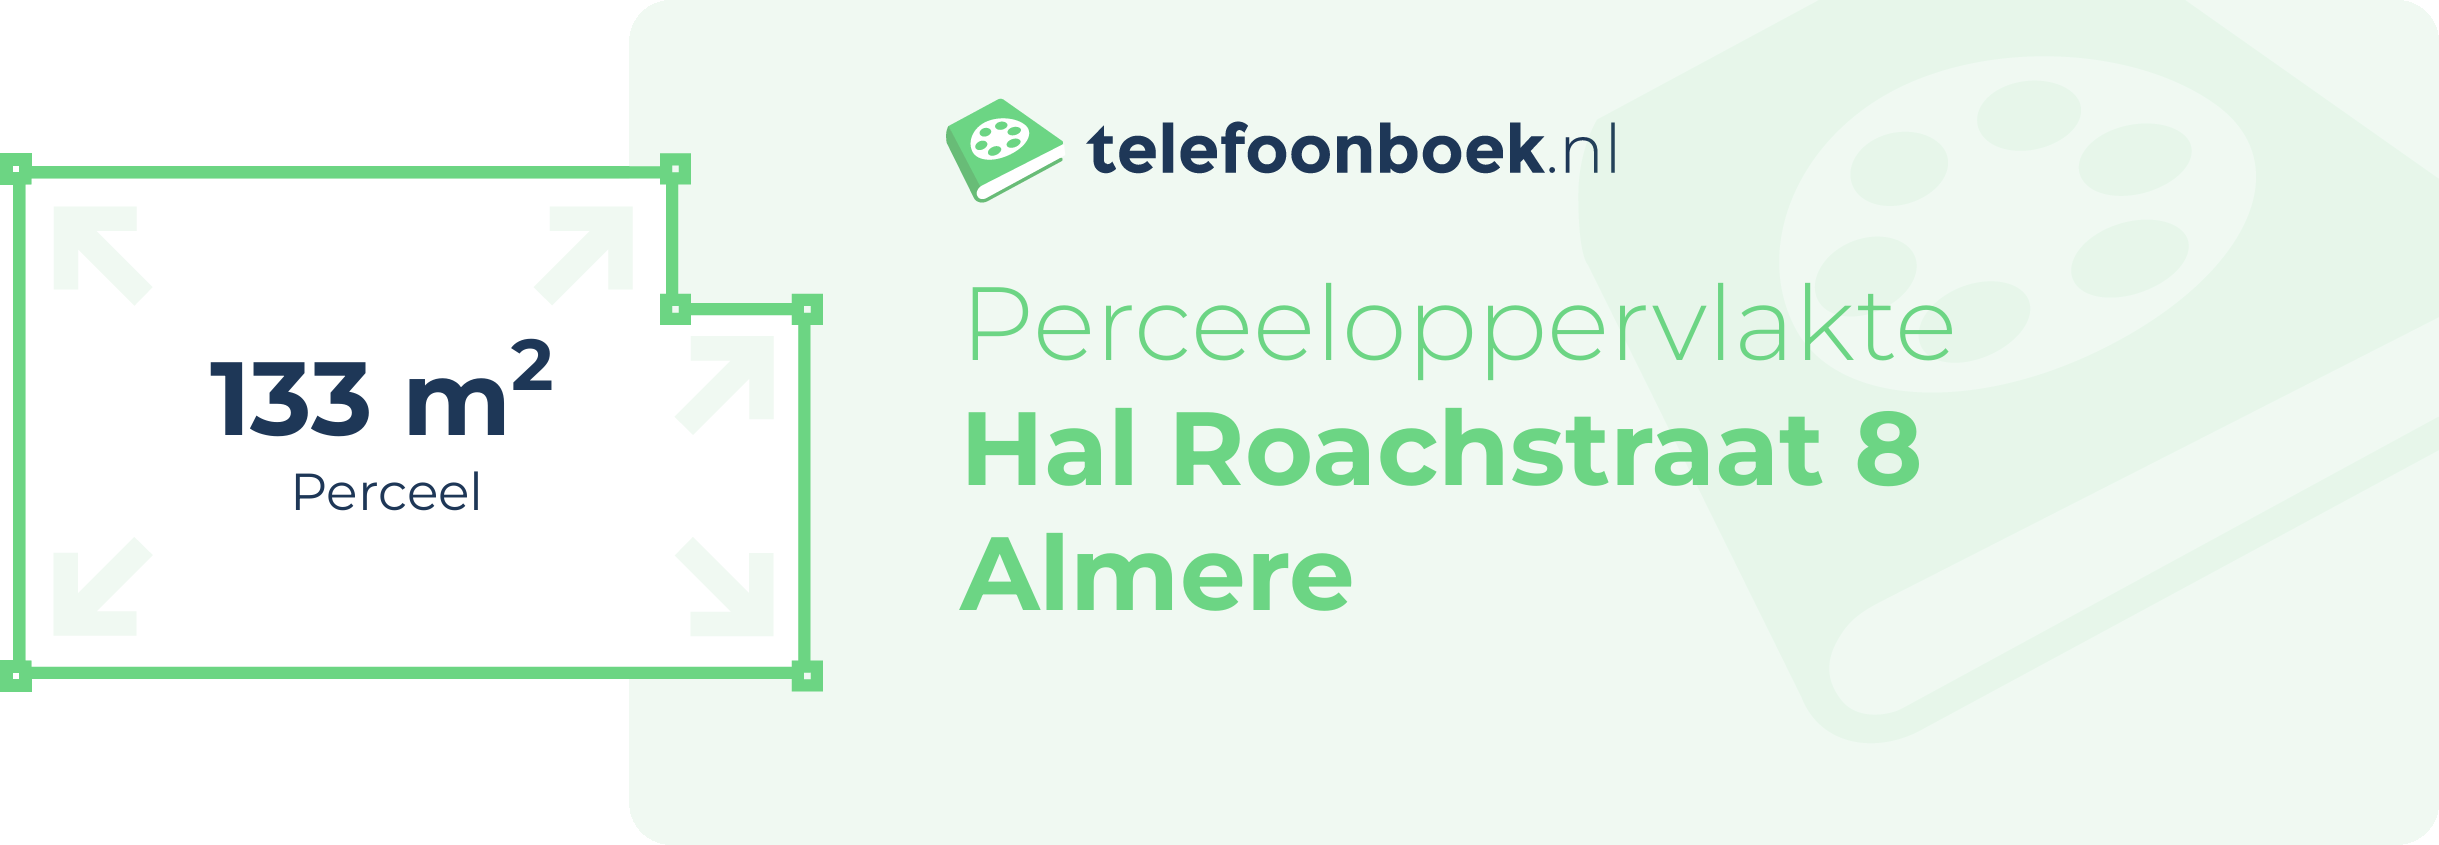 Perceeloppervlakte Hal Roachstraat 8 Almere